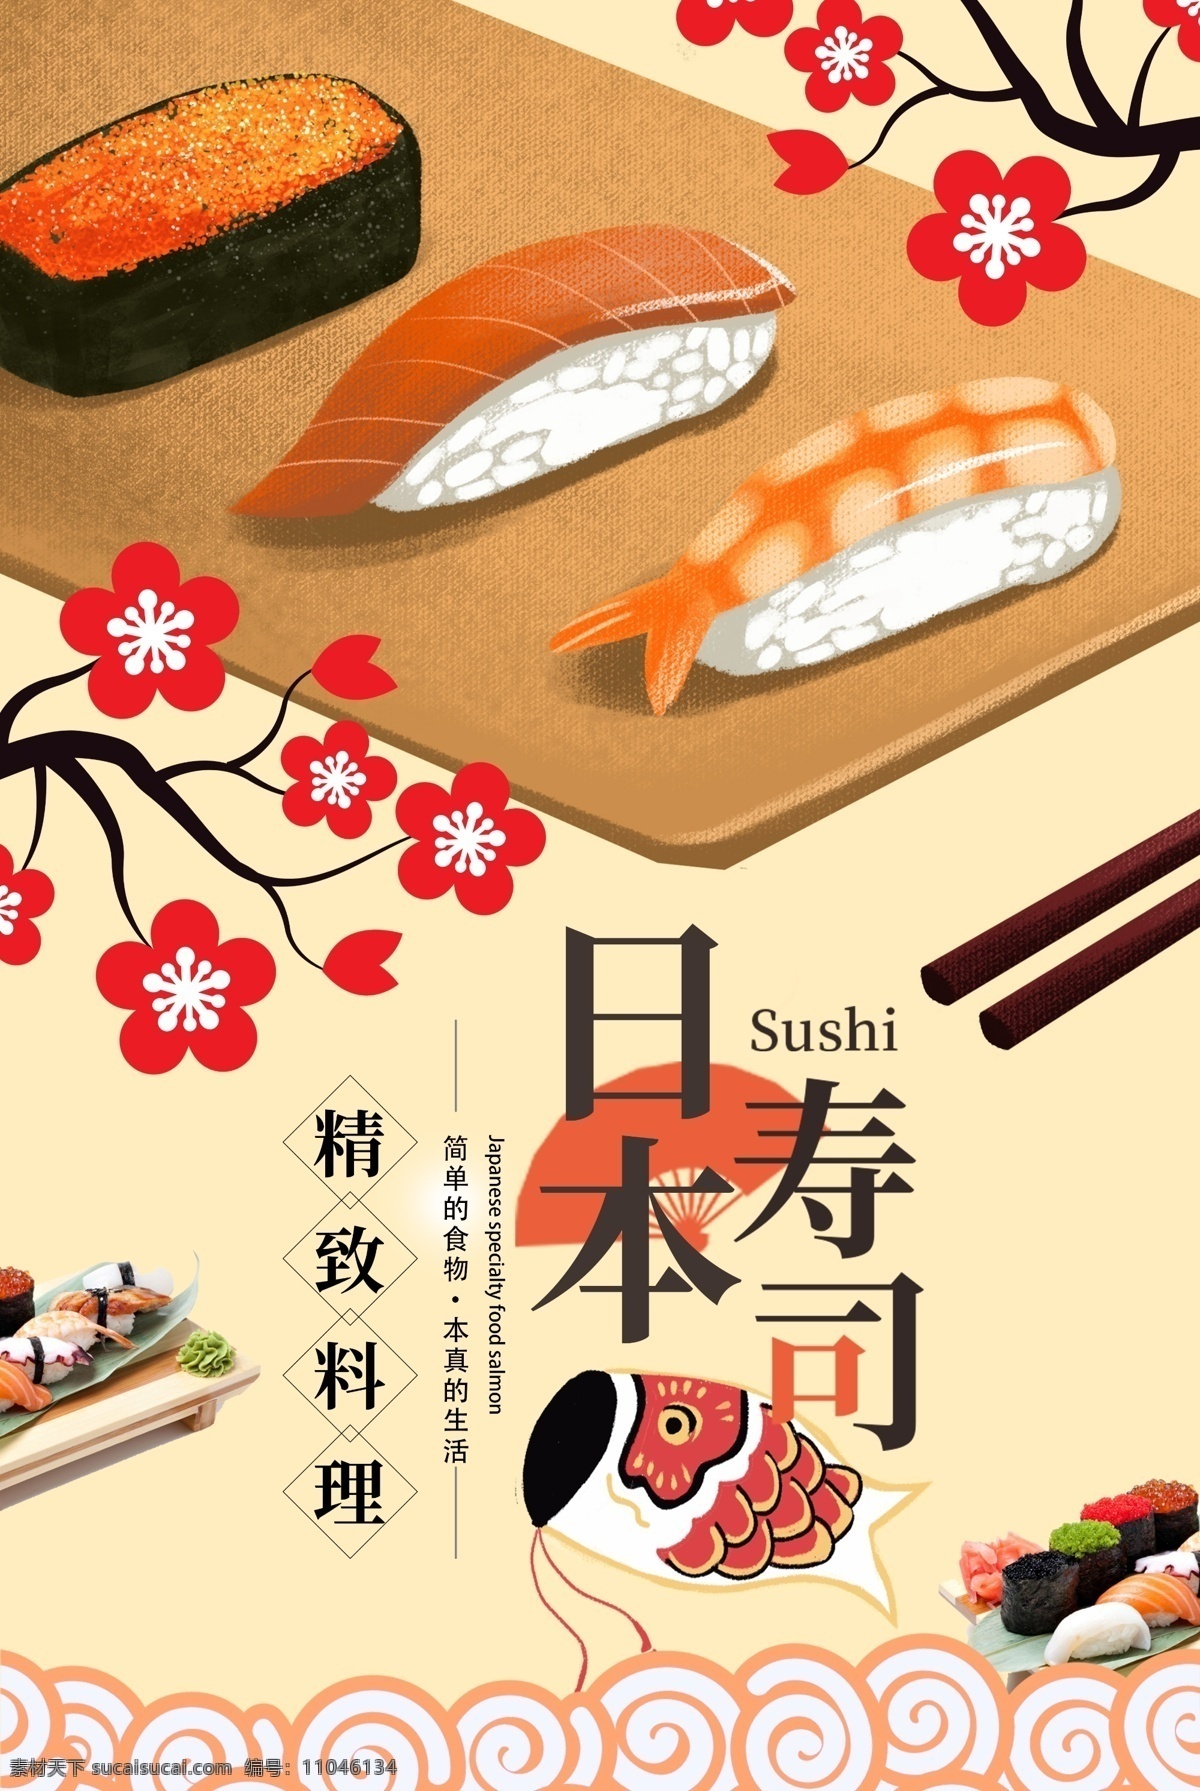 日本 美食 料理 寿司 海报 促销 寿司促销 寿司海报 日料 日本寿司 日本寿司海报 美味 食品 食品海报